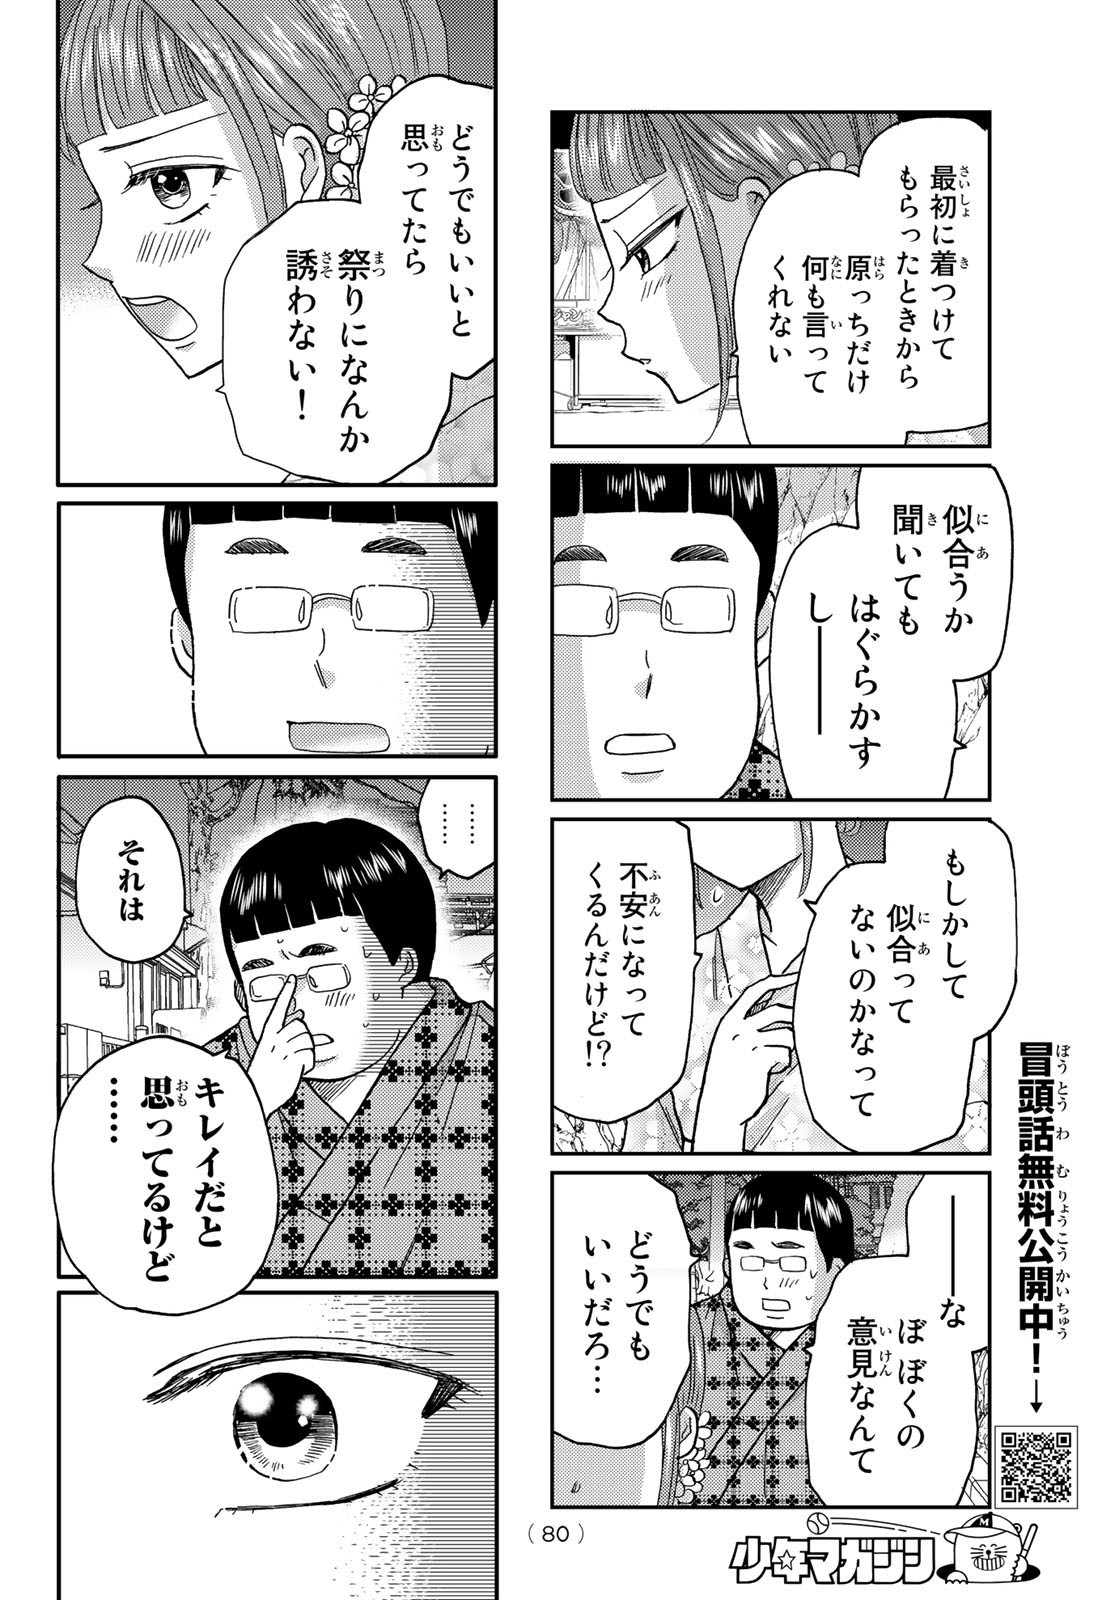 Hinata-san, Hoshino desu. - Chapter 046 - Page 8